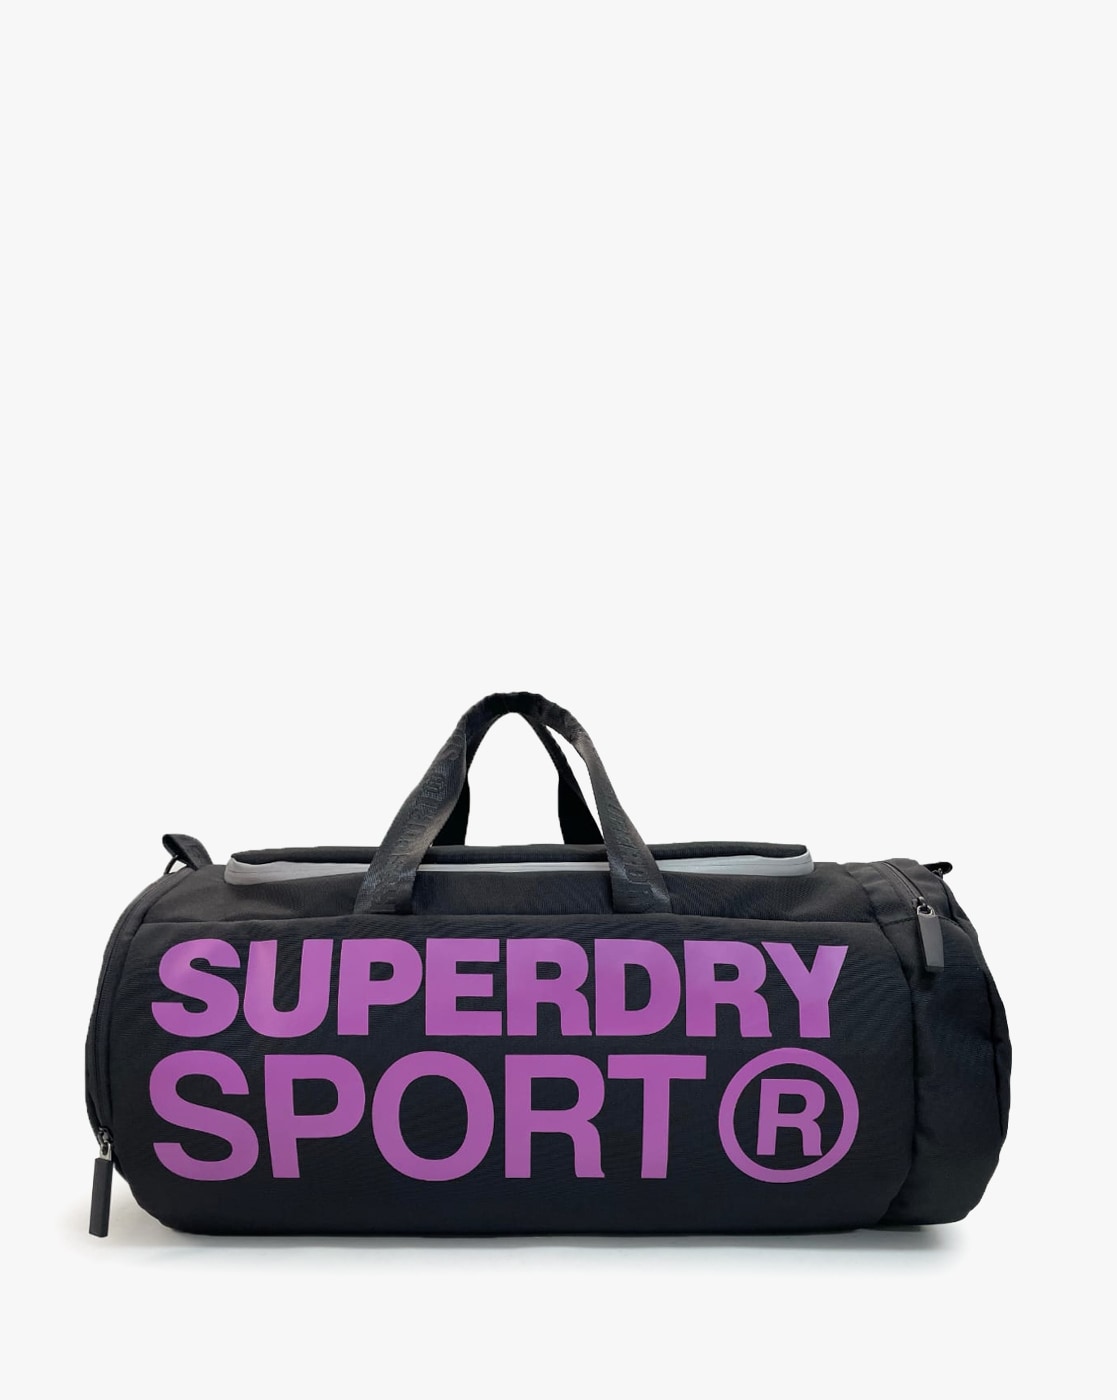 Superdry Kitbag | vlr.eng.br